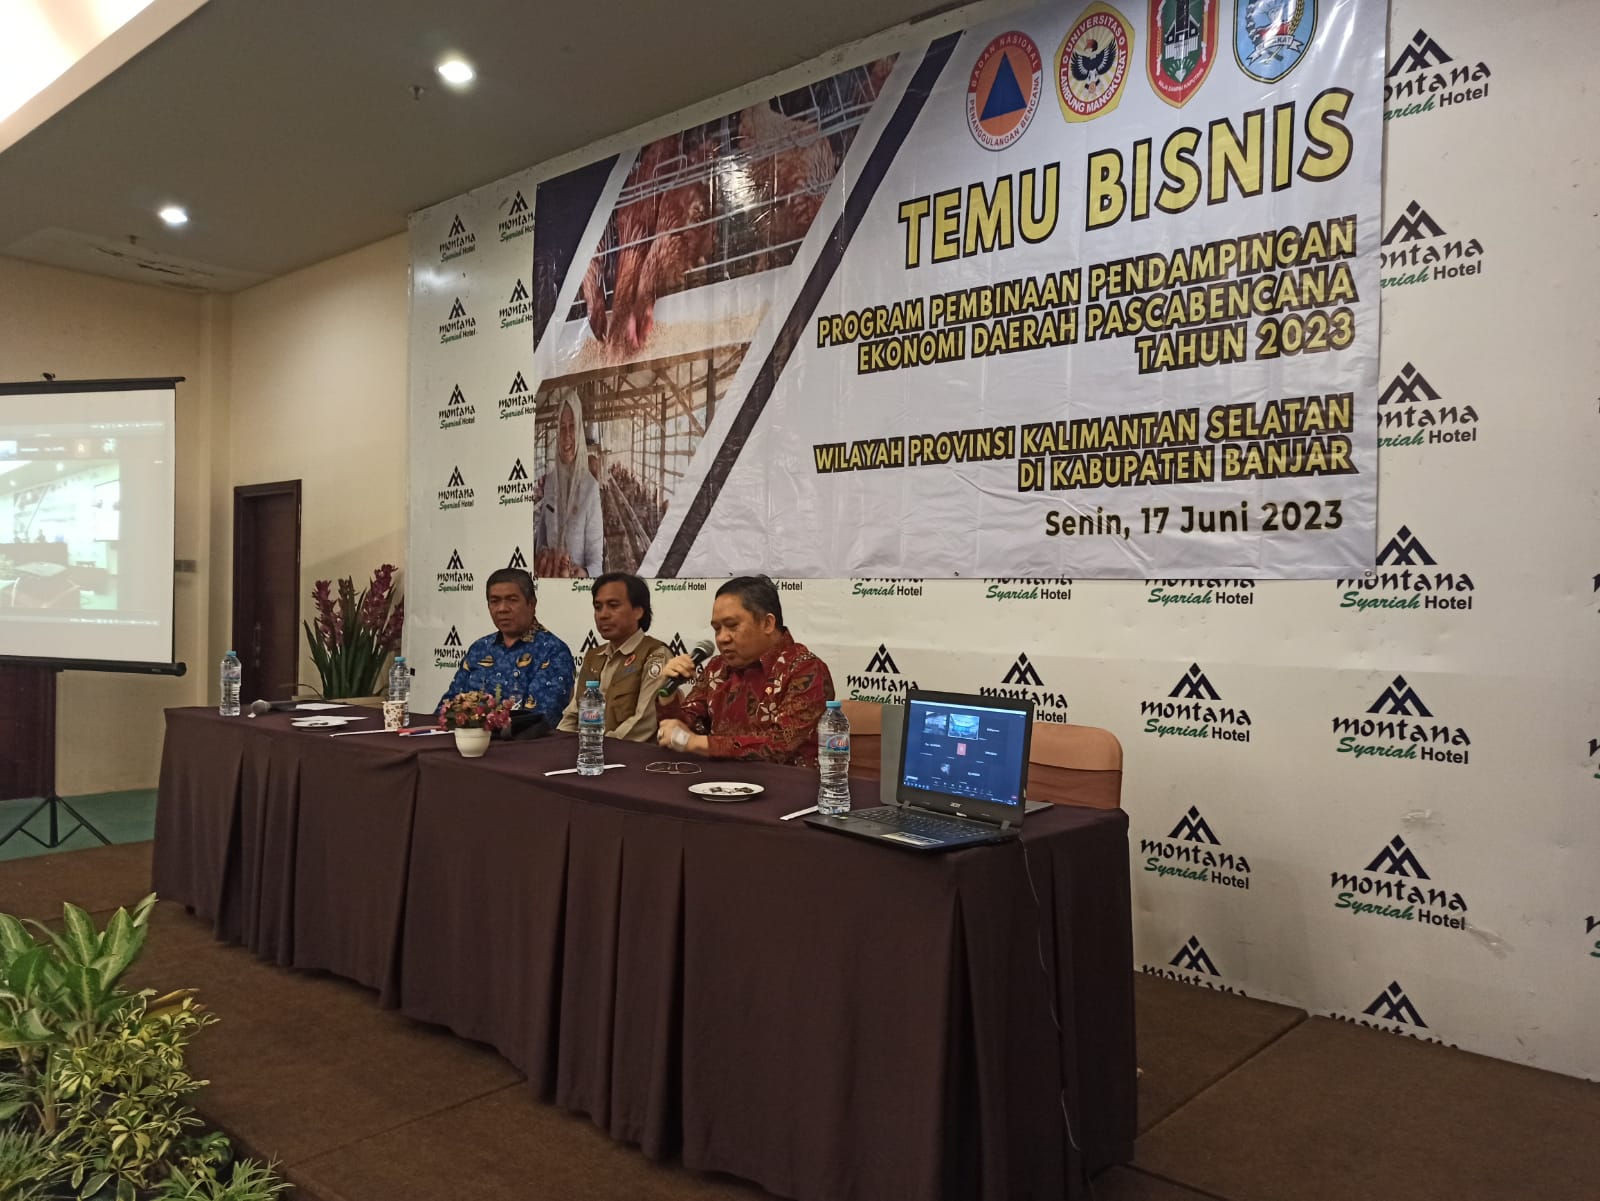 BNPB Fasilitasi Pokmas Binaan Melalui Forum Temu Bisnis